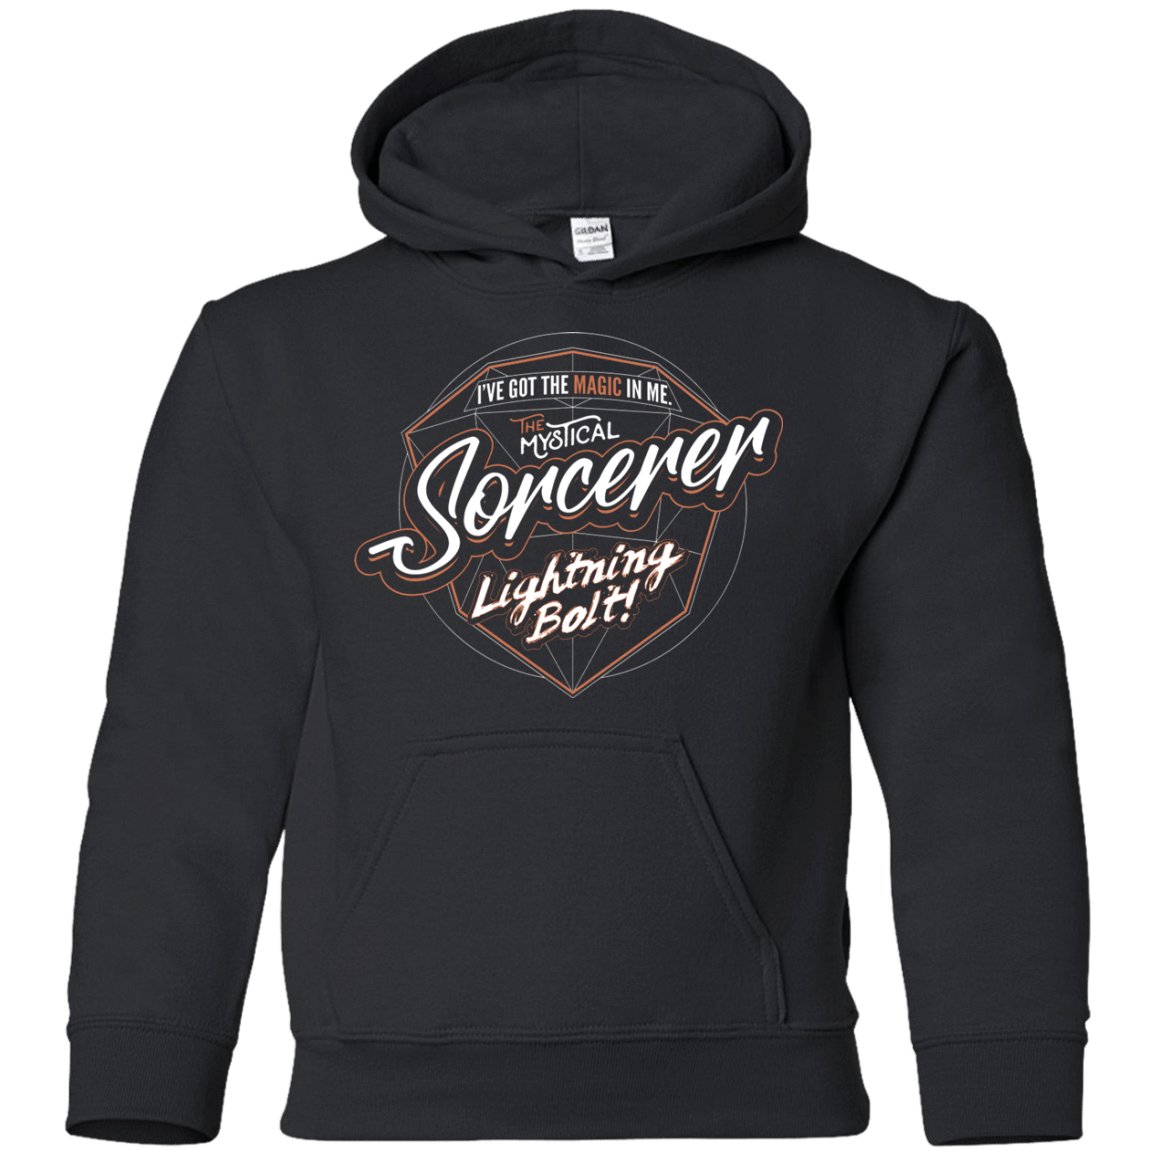 Sweatshirts Black / YS Sorcerer Youth Hoodie